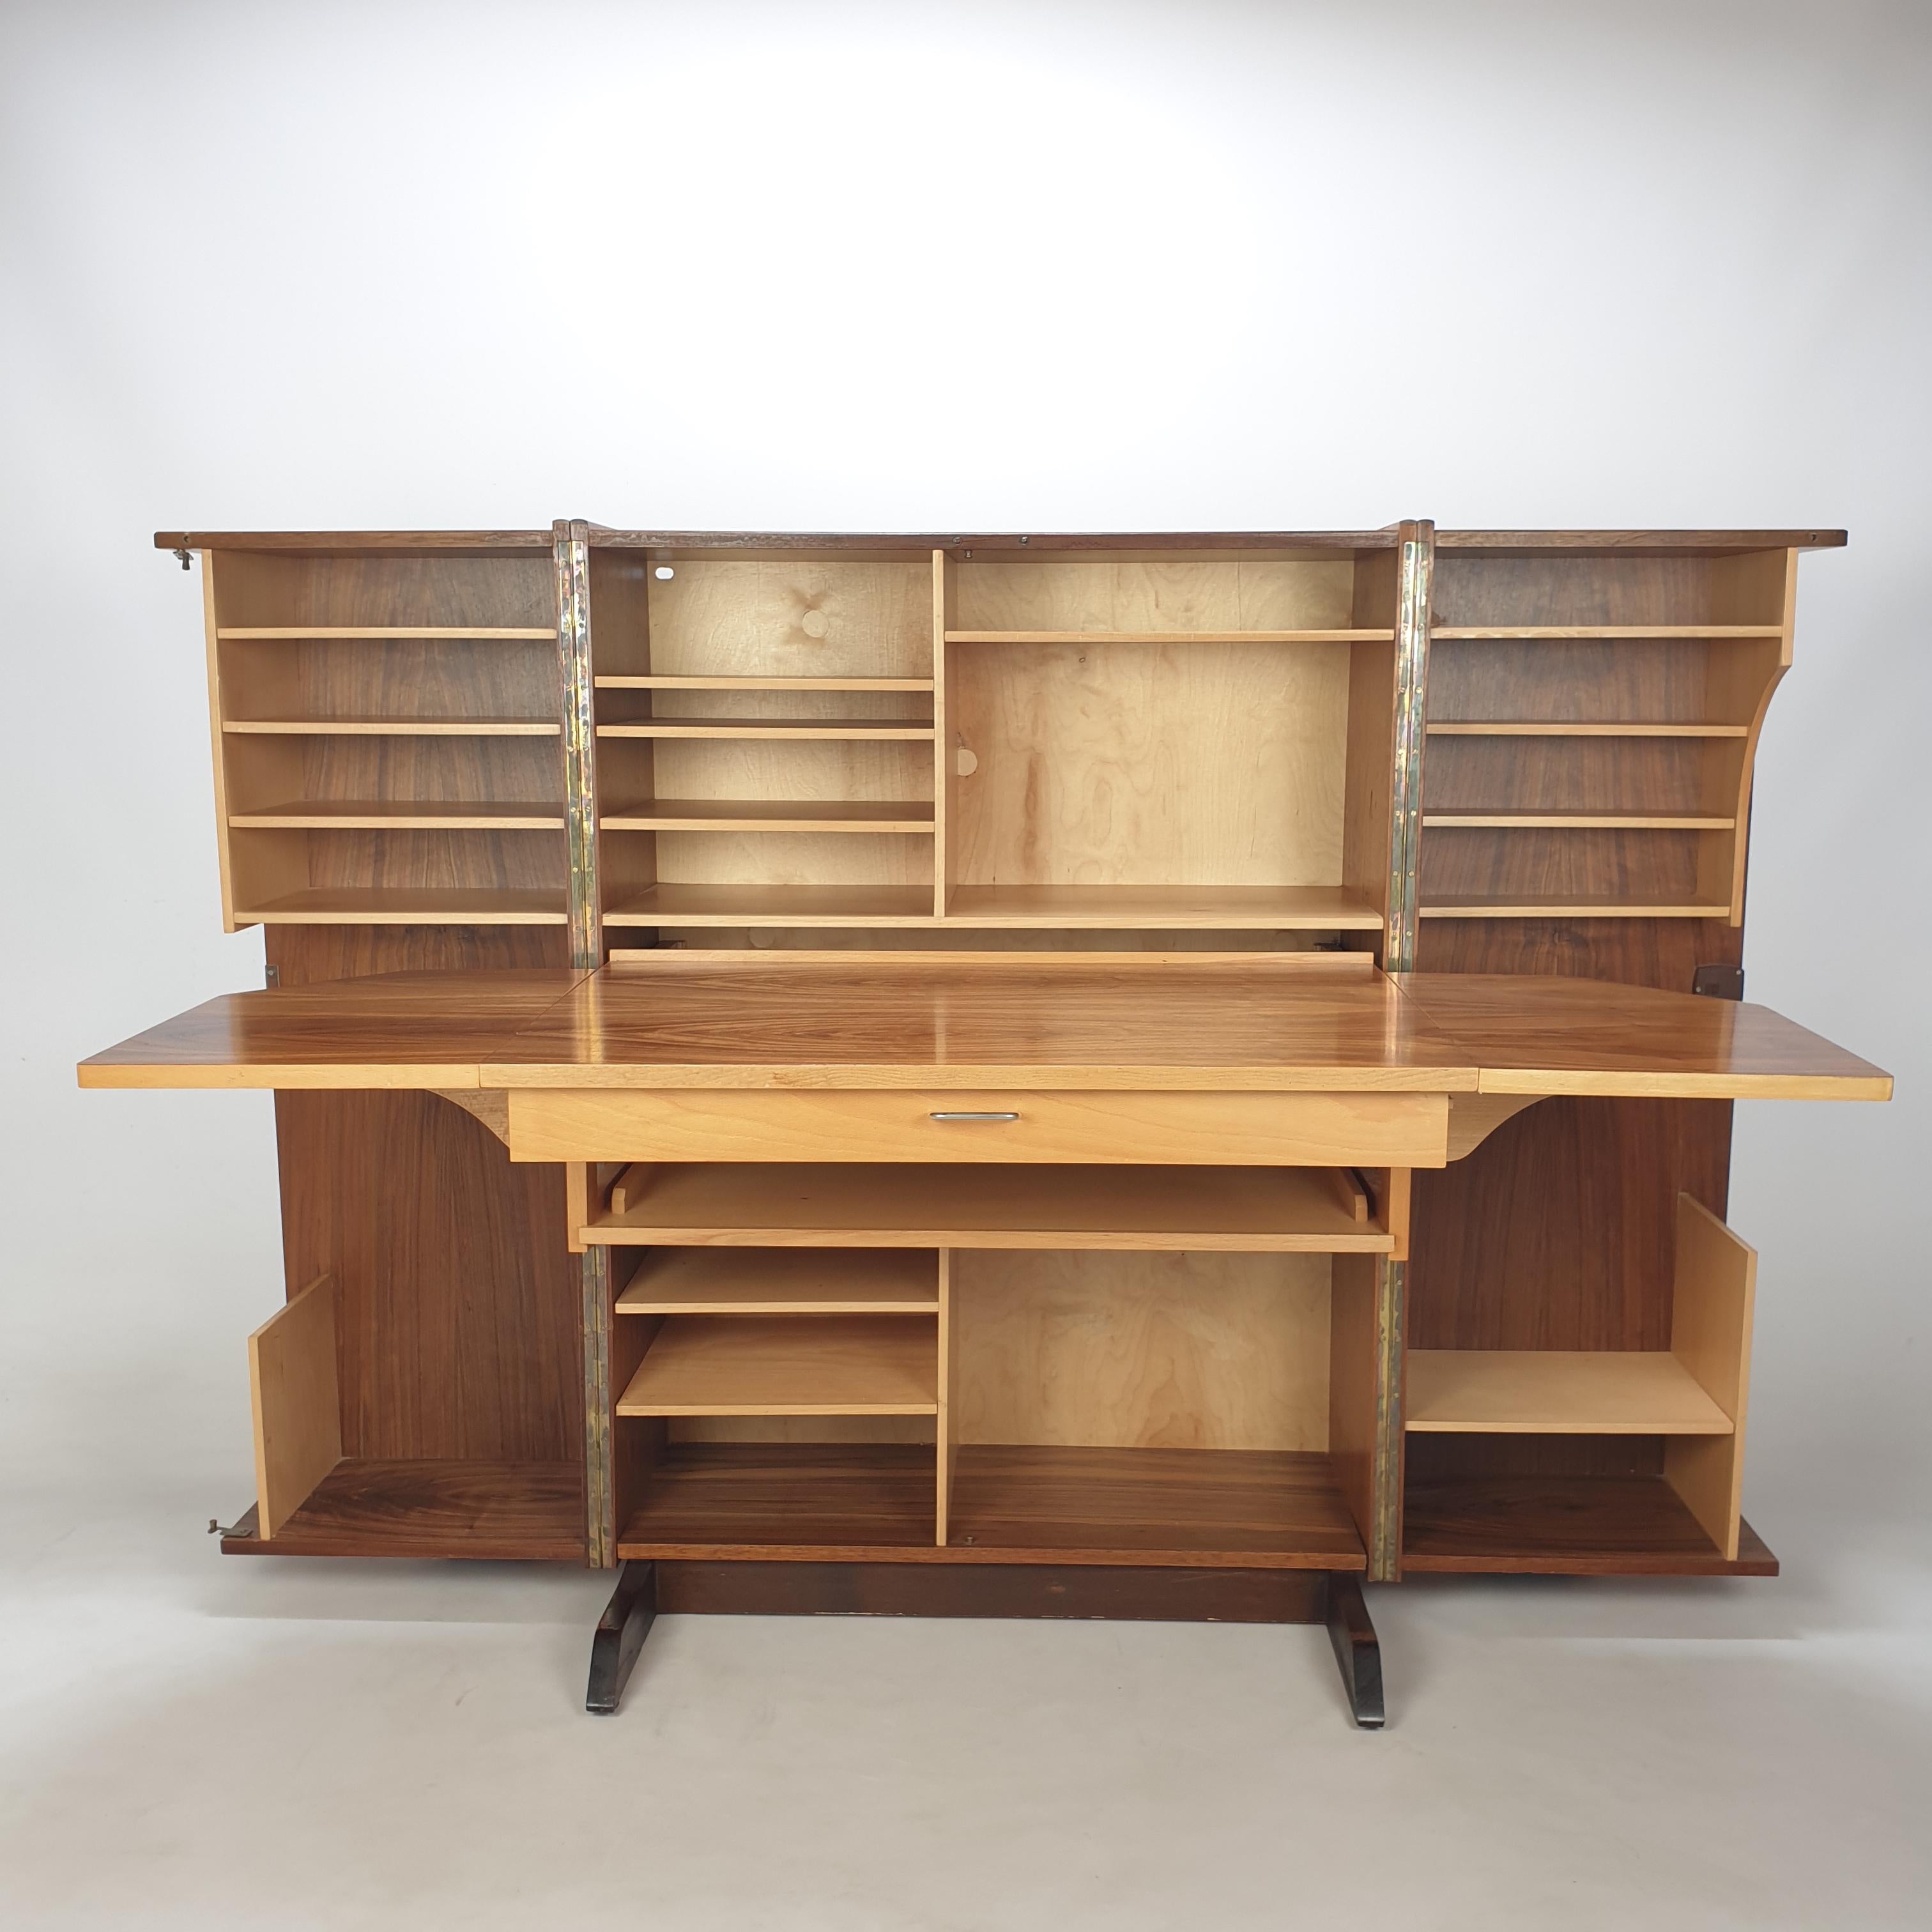 Dieser absolut phänomenale Schreibtisch wurde in den 60er Jahren von Mummenthaler und Meier (Schweiz) entworfen. 
Es handelt sich um einen faltbaren und verschließbaren Schreibtisch oder Sekretär namens 